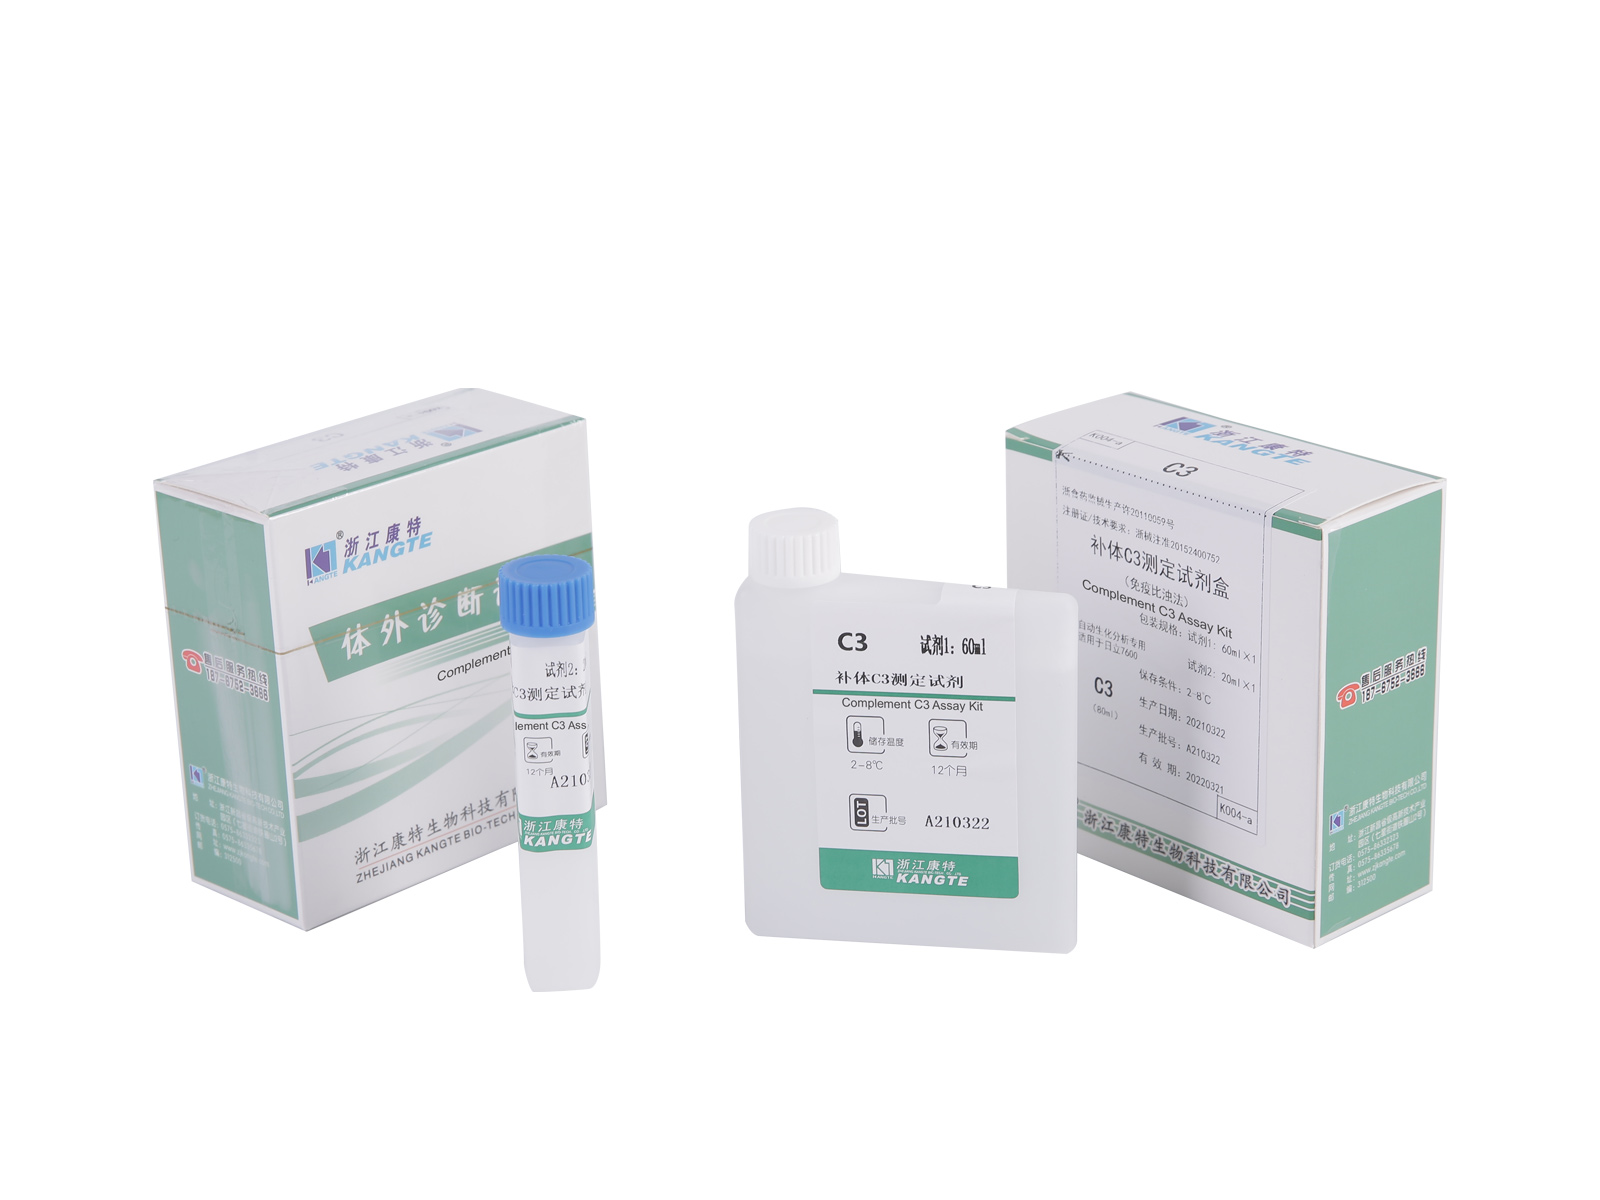 【C3】Complement C3 Assay Kit (Immunoturbidimetric Method)